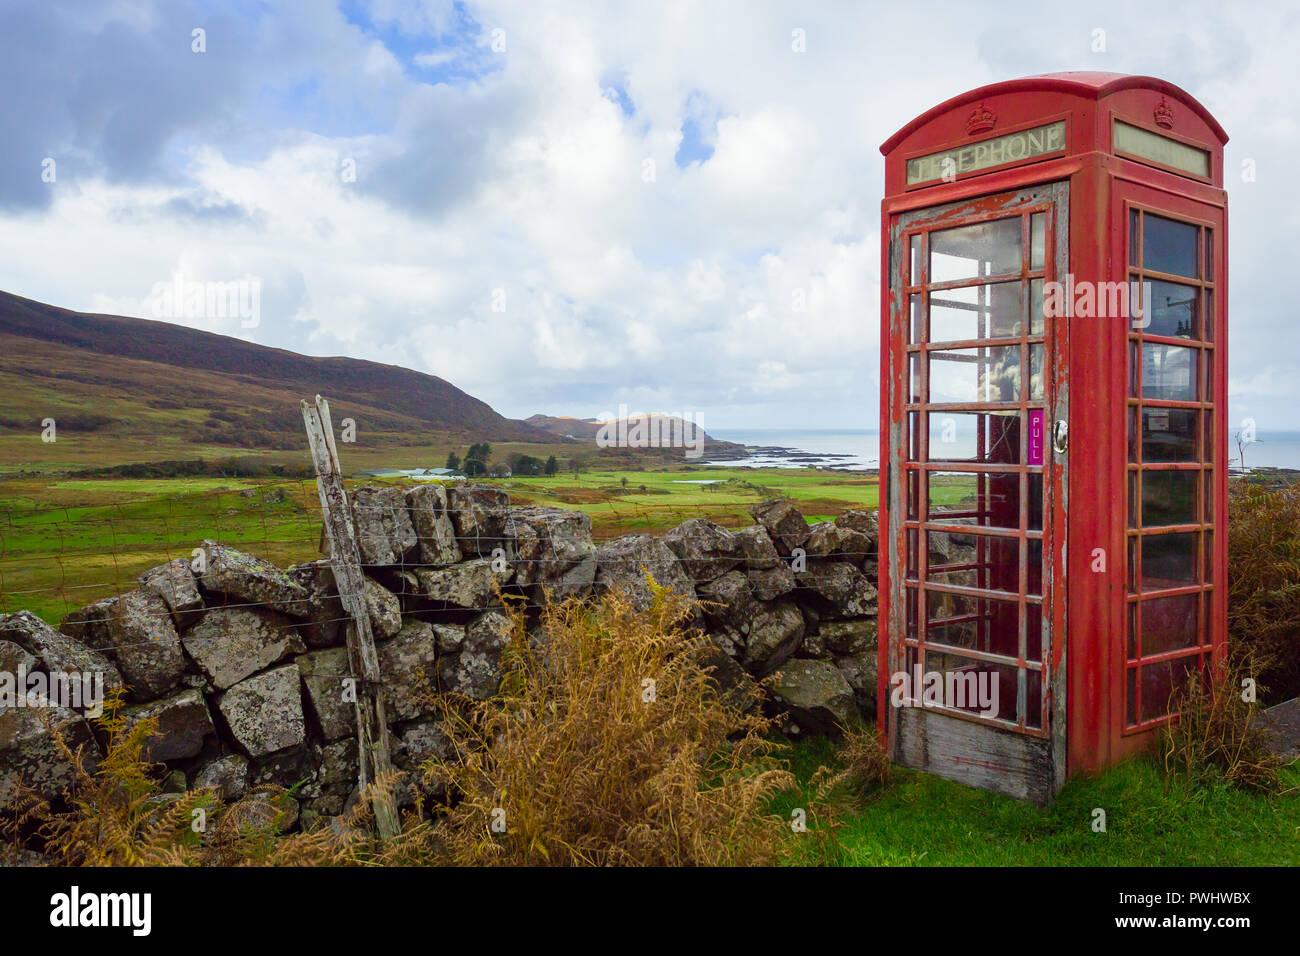 Old fashioned red telephone box, abandonnés et dissoute dans un village rural dans les montagnes de l'Ecosse sur l'île de Eigg des Hébrides. Banque D'Images